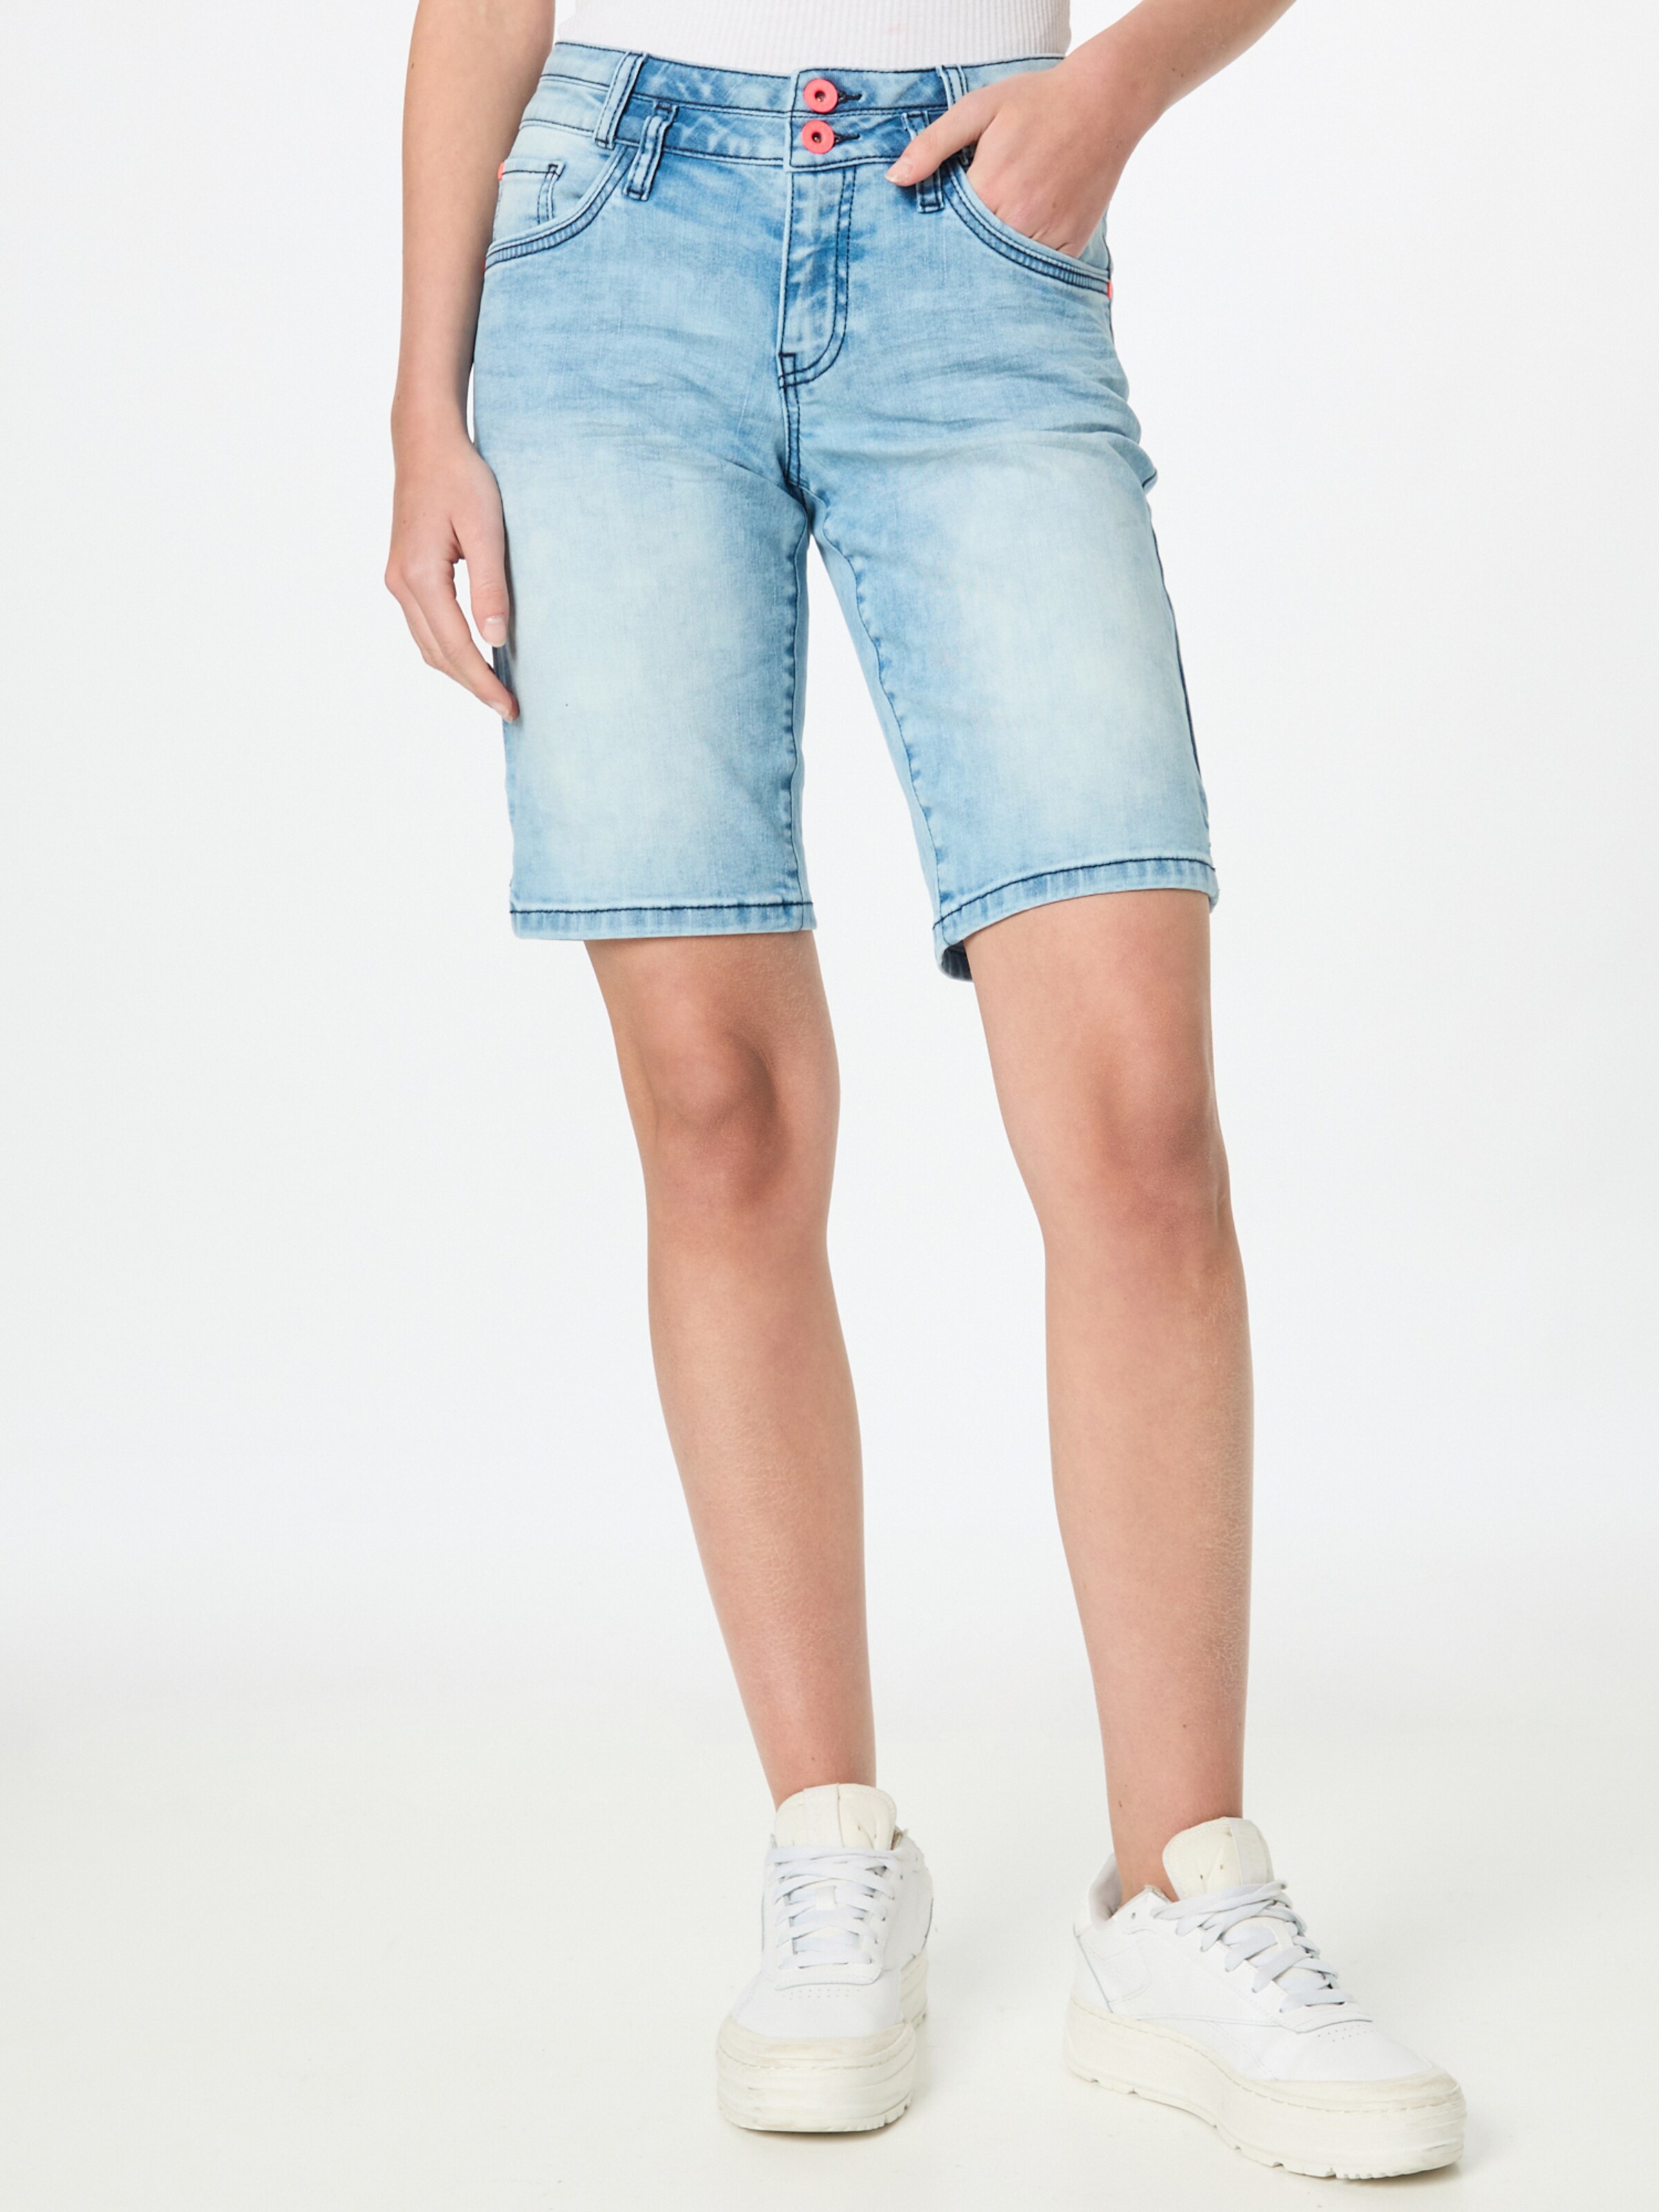 Rabatt 92 % Promod Shorts jeans DAMEN Jeans Basisch Braun 34 